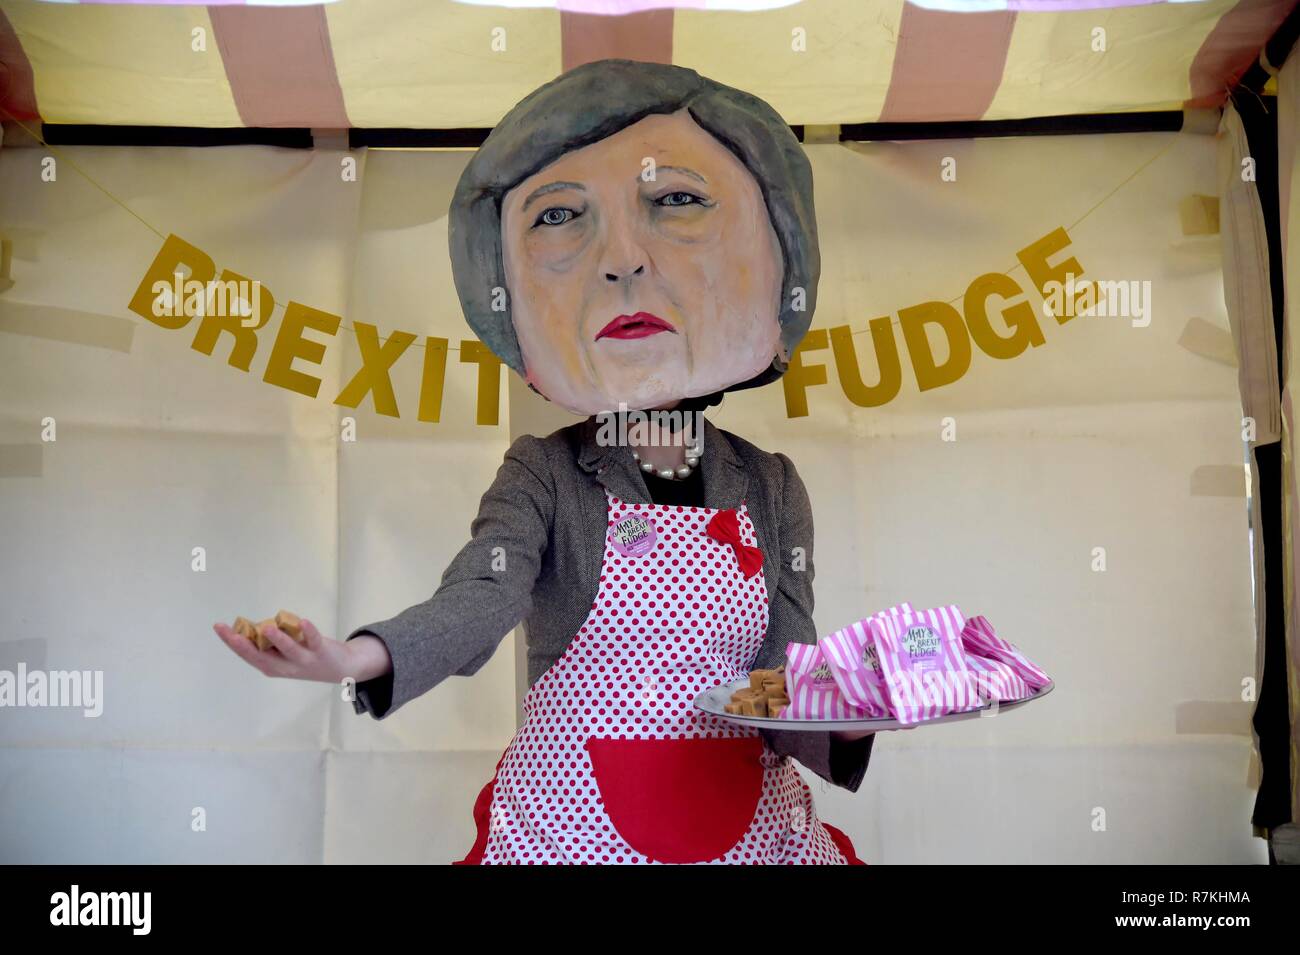 Theresa Maggio e la Brexit Fudge stallo, Westminster, London Il credito: Finnbarr Webster/Alamy Live News Foto Stock